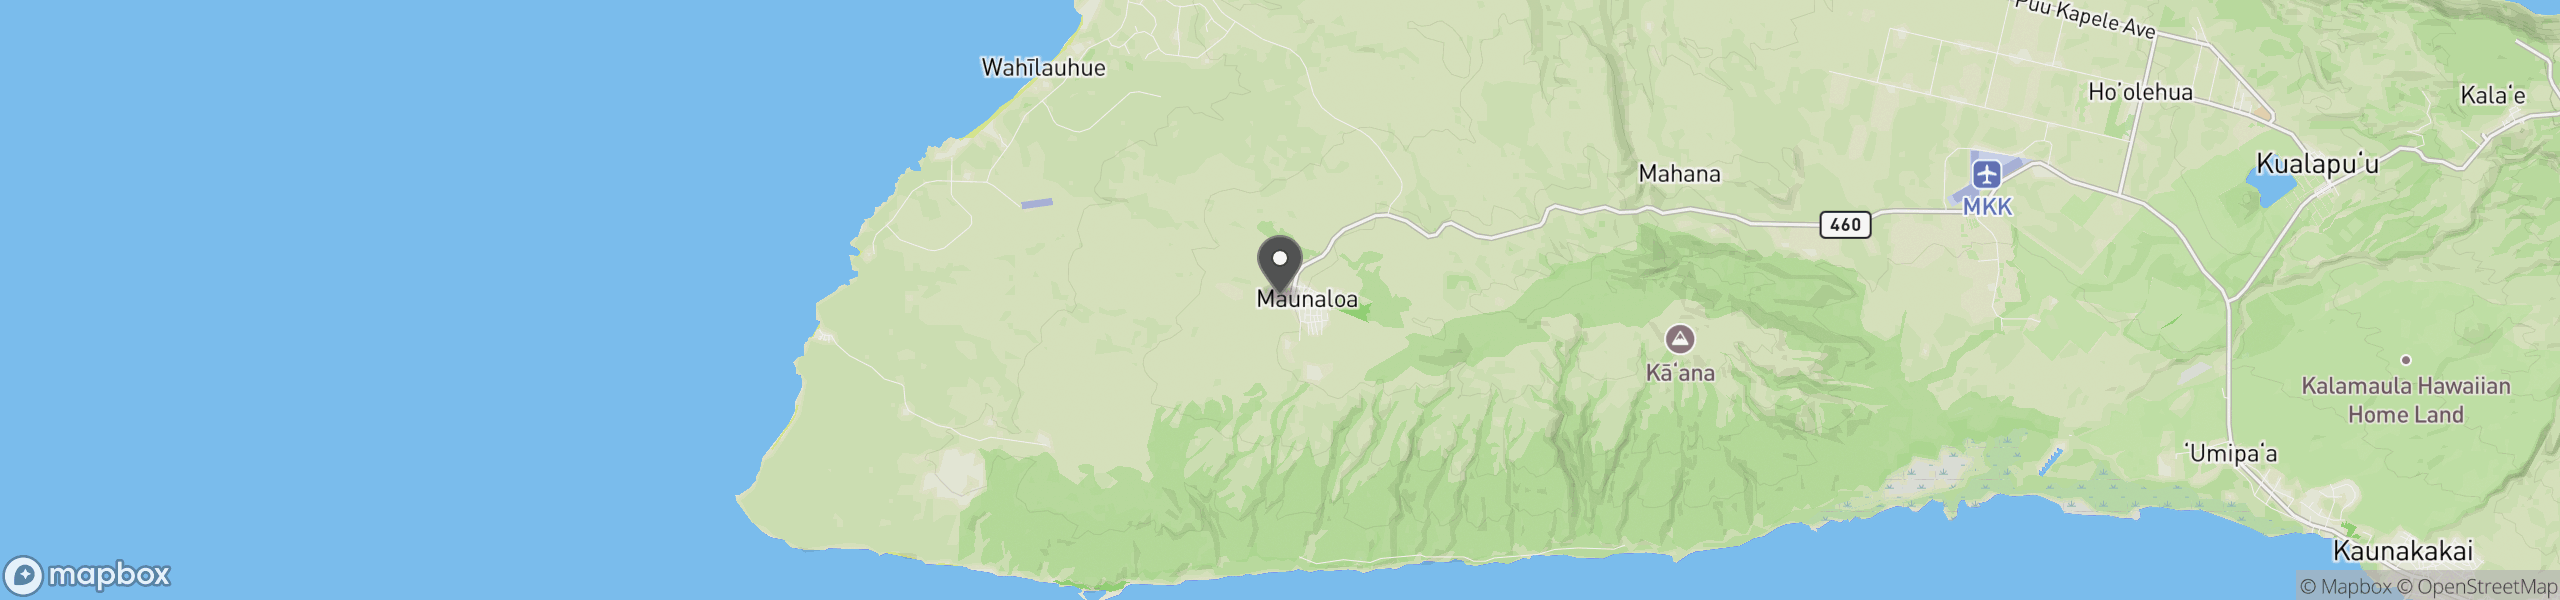 Maunaloa, HI